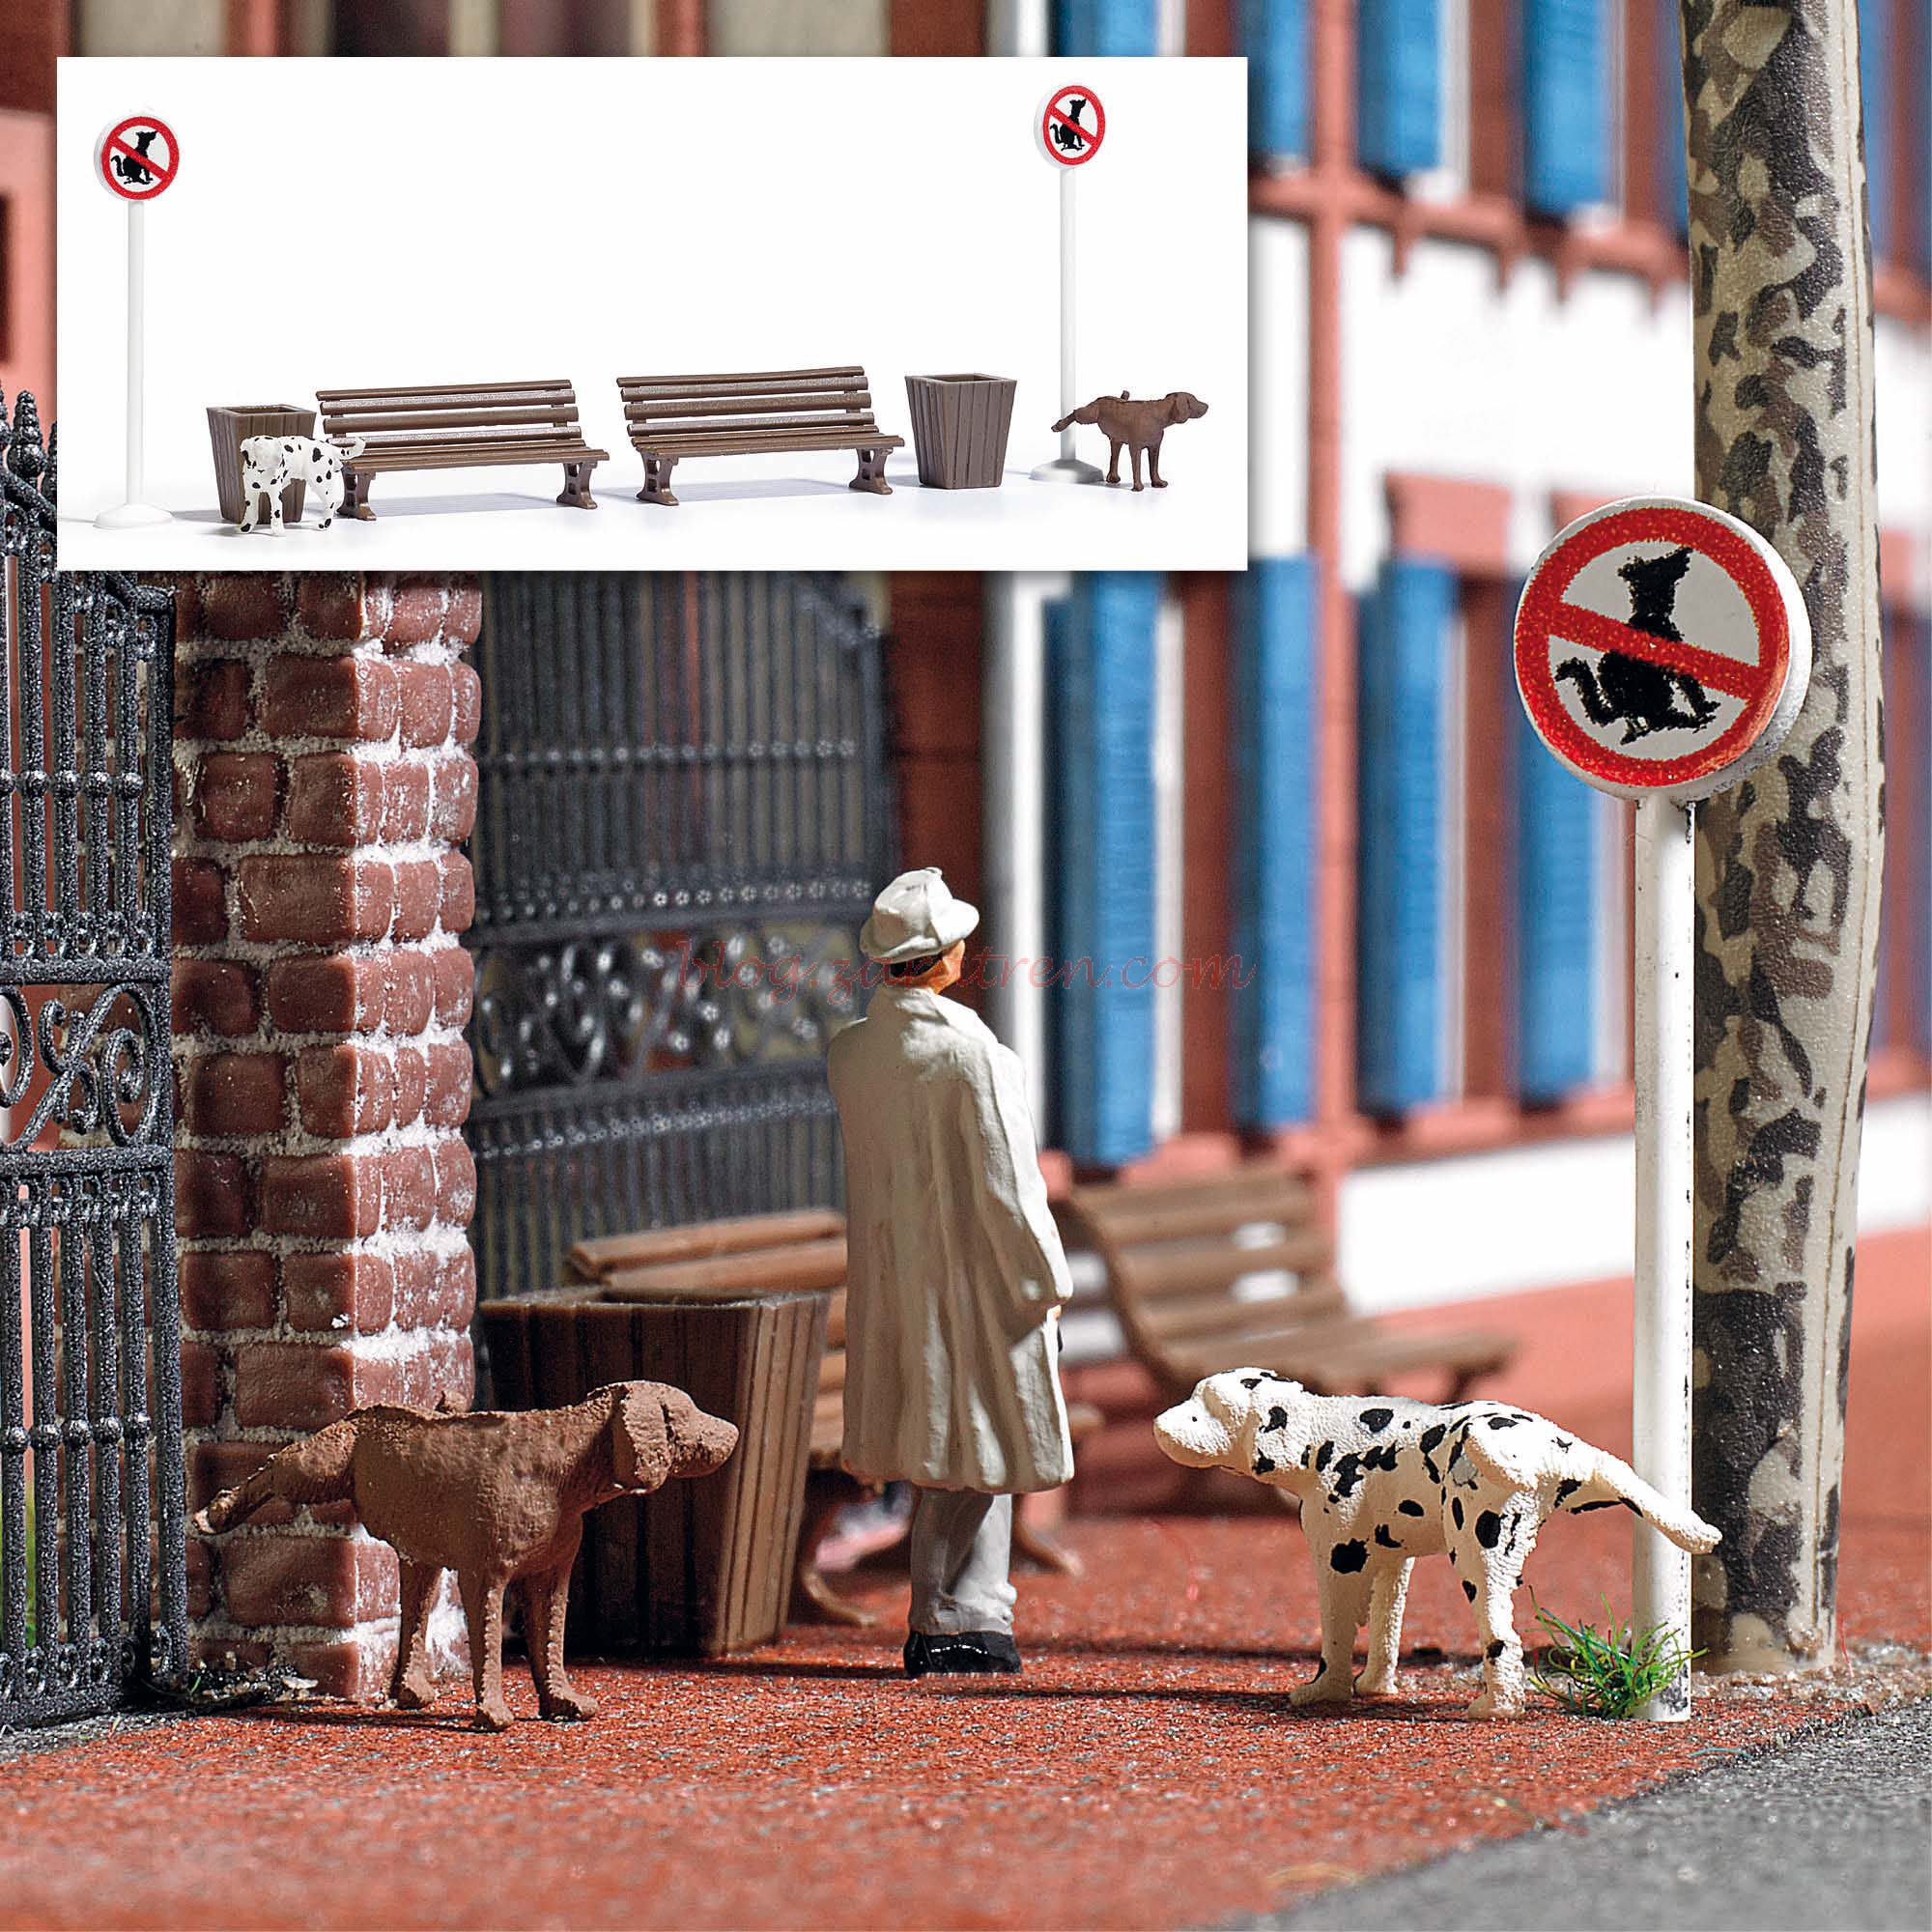 Busch – Perros que orinan en los cubos de basura, Escala H0, Ref: 7895